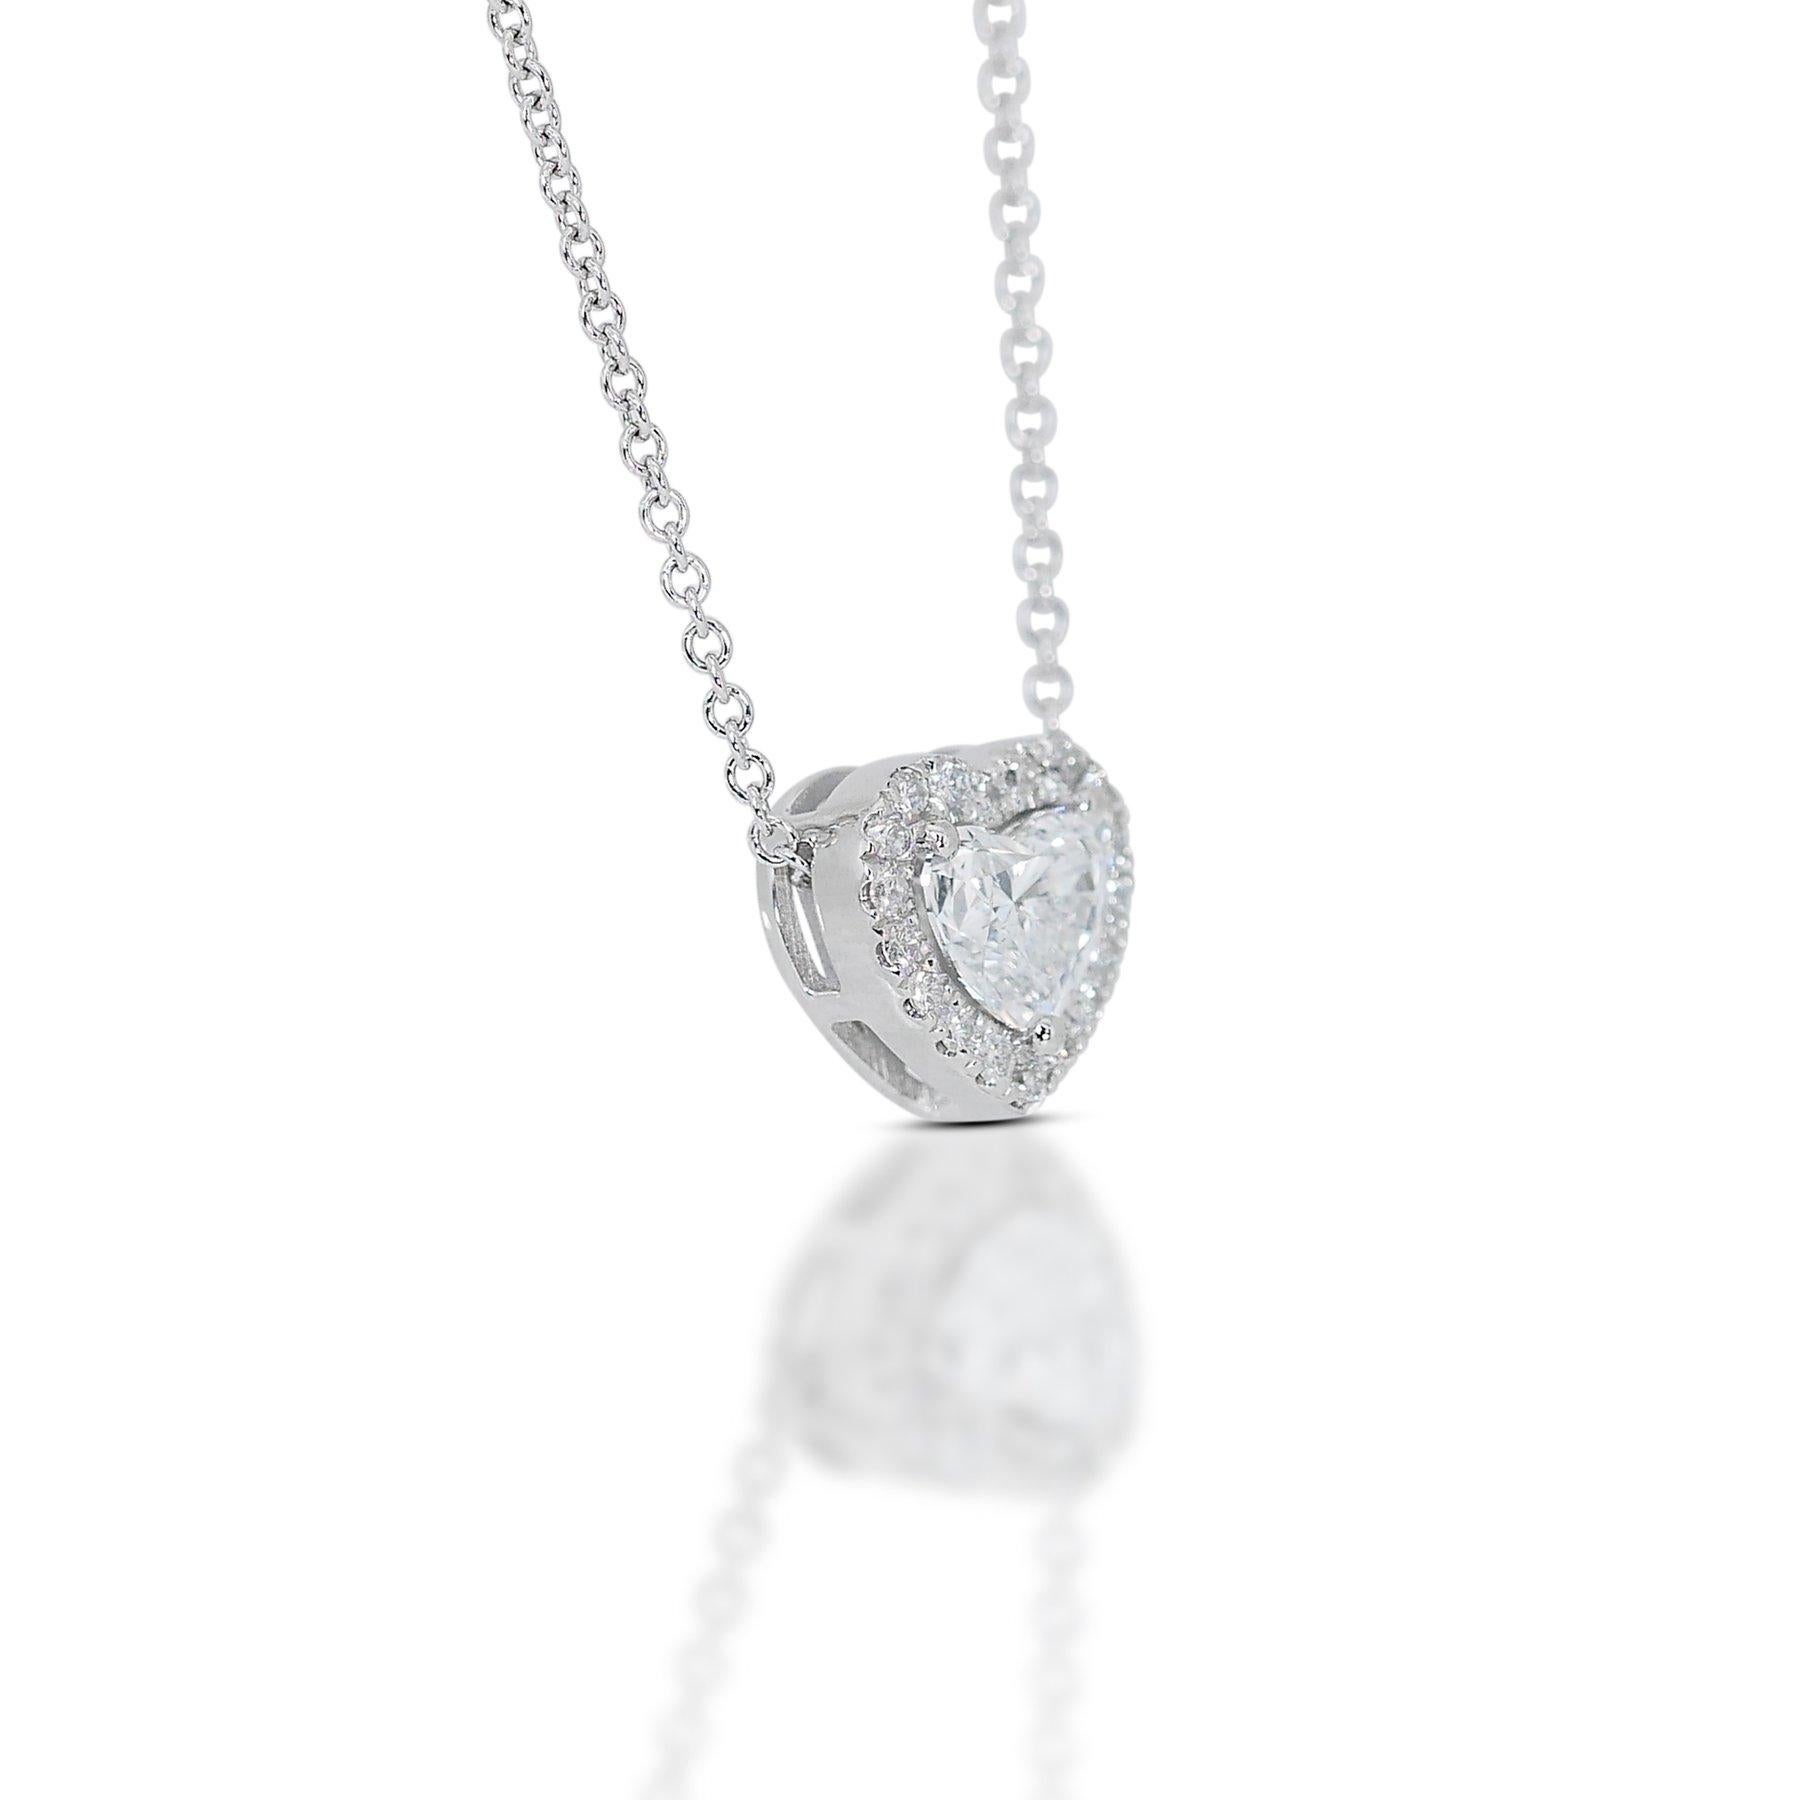 Lovely 1,22ct Diamanten Heart-Shaped Halo Halskette in 18k Weißgold - GIA zertifiziert

Mit dieser exquisiten Diamant-Halskette strahlen Sie mit Raffinesse und Charme. Das aus luxuriösem 18-karätigem Weißgold gefertigte Herzstück ist mit einem